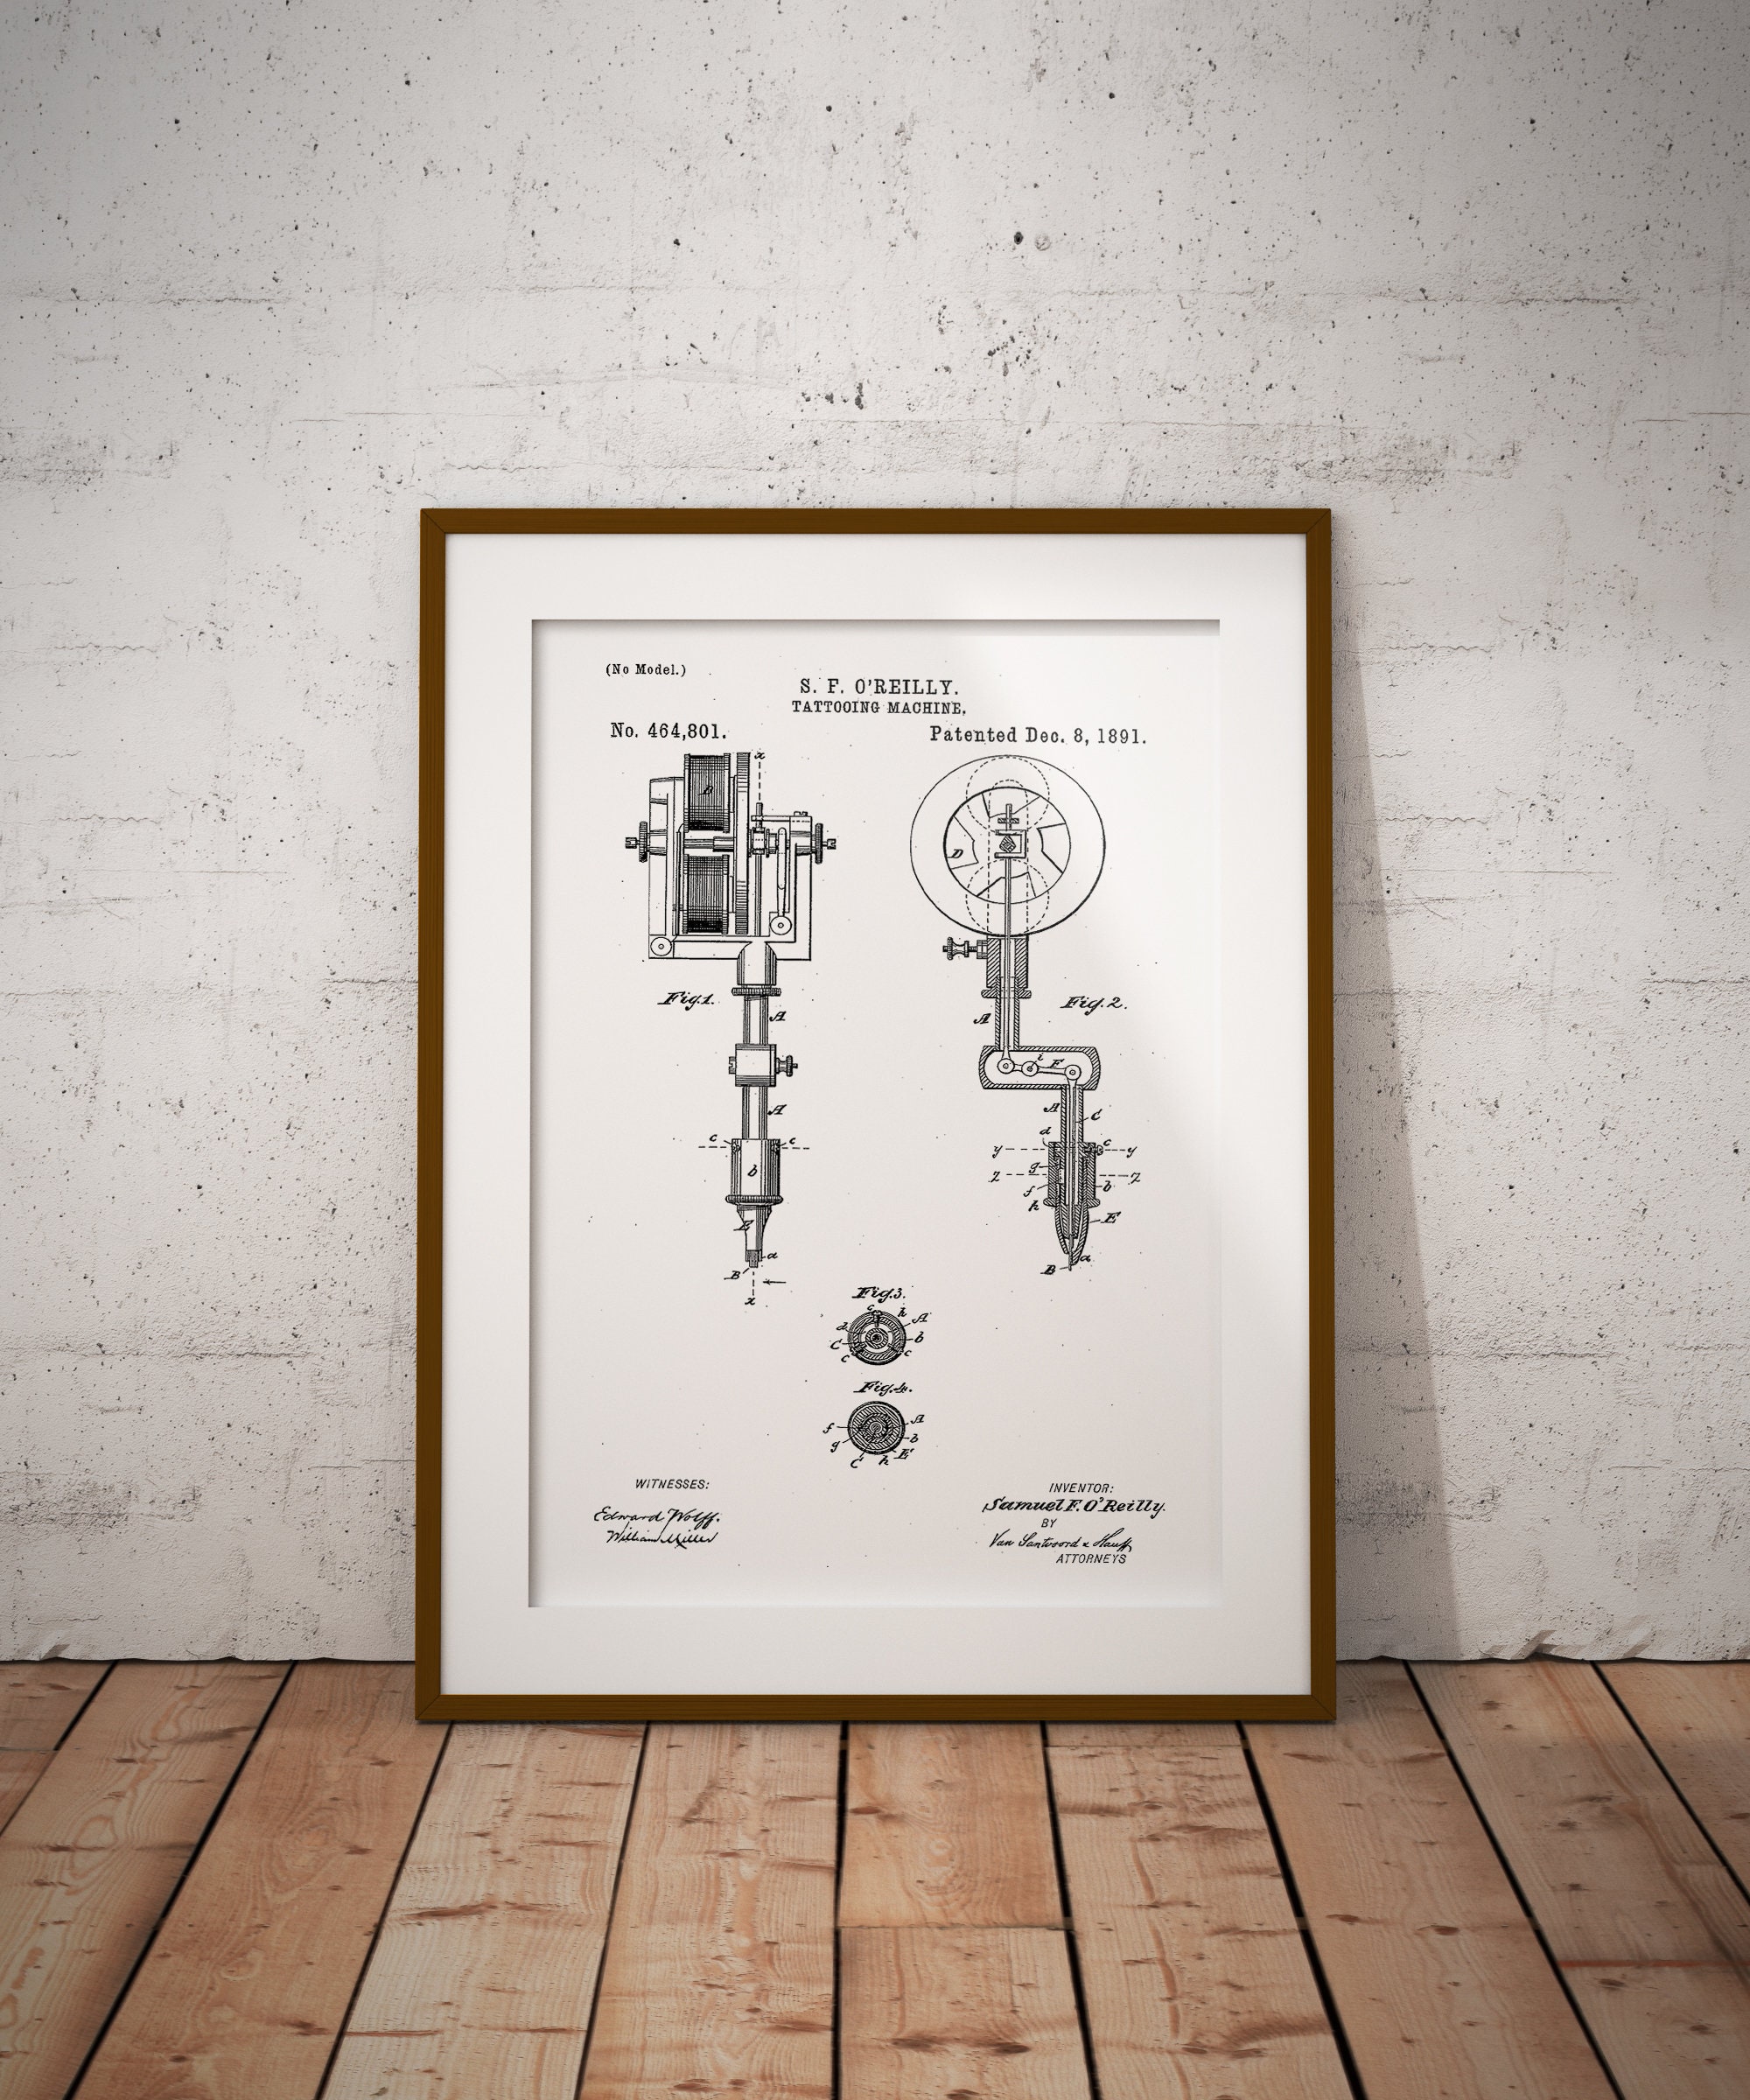 Patent Print Tottooist Art Studio Póster Con Diseños Patentes Decoración de Hogar Inventos Carteles Tattoo Machine Poster de Patente Marco No Incluido Conjunto de 4 Impresiones 